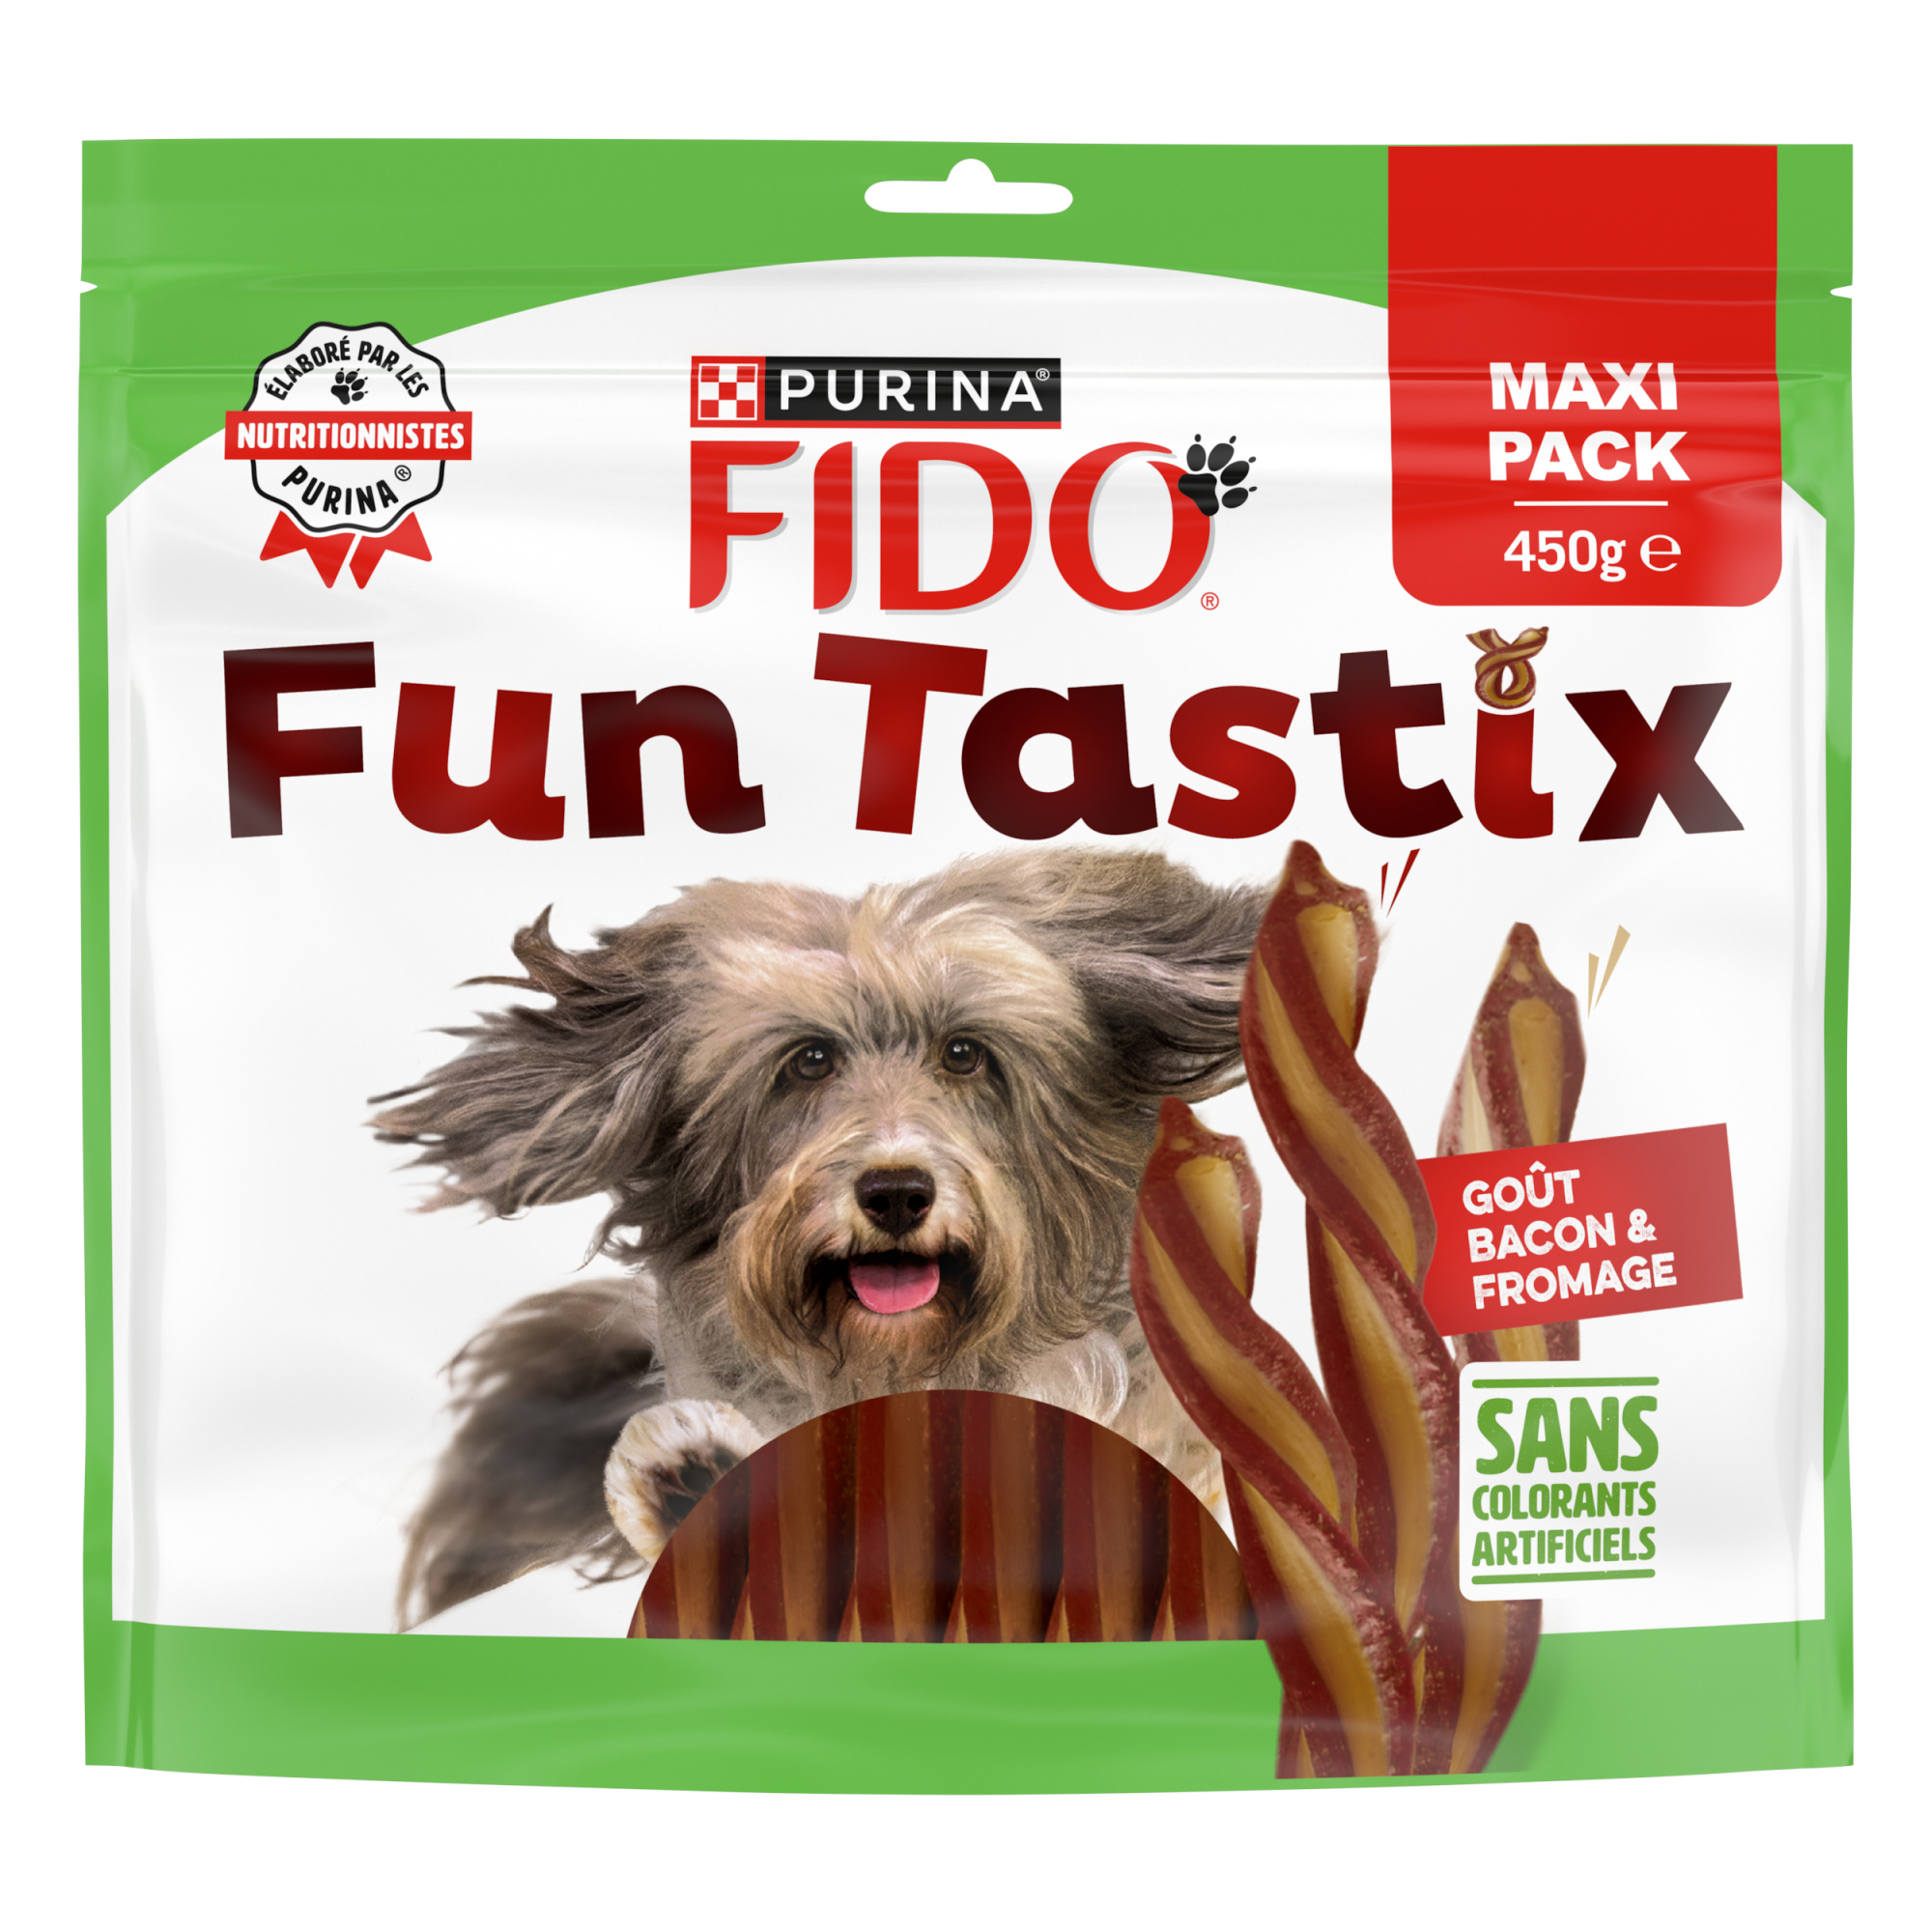 FIDO FunTastix sabor de bacon e queijo